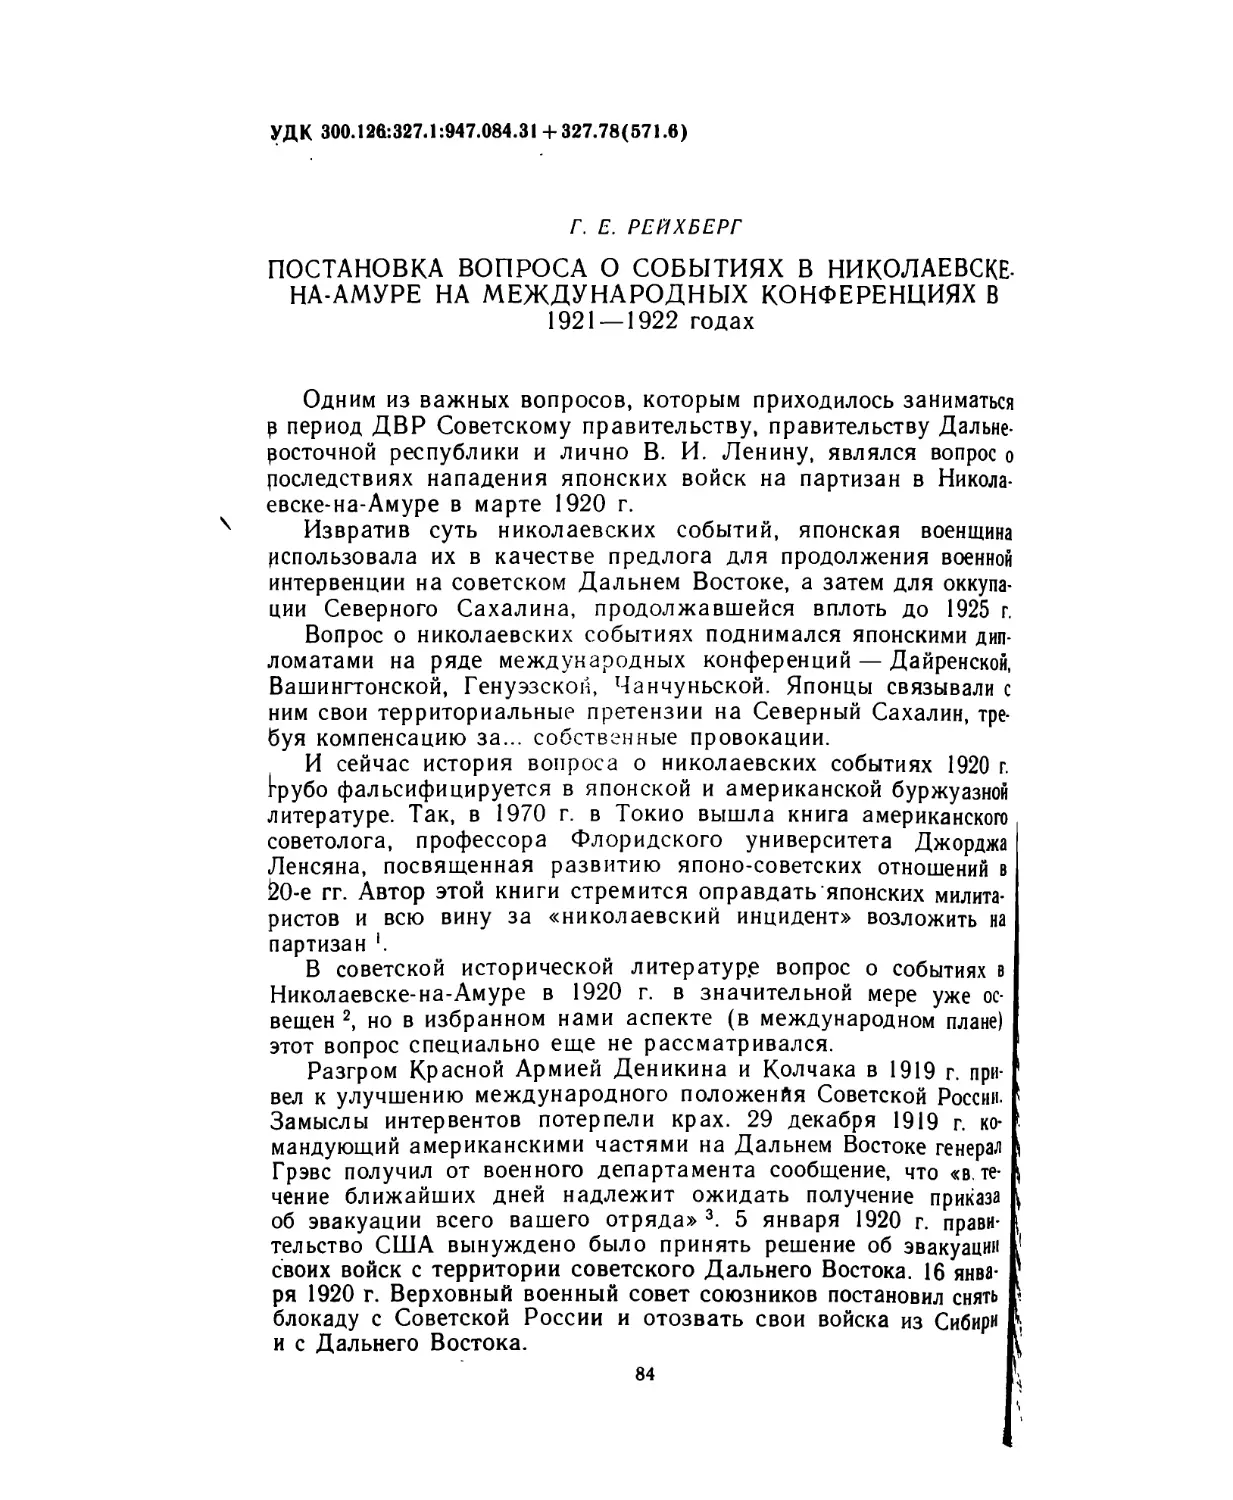 Рейхберг Г. Е. Постановка вопроса о событиях в Николаевске-на-Амуре на международных конференциях в 1921-1922 годах